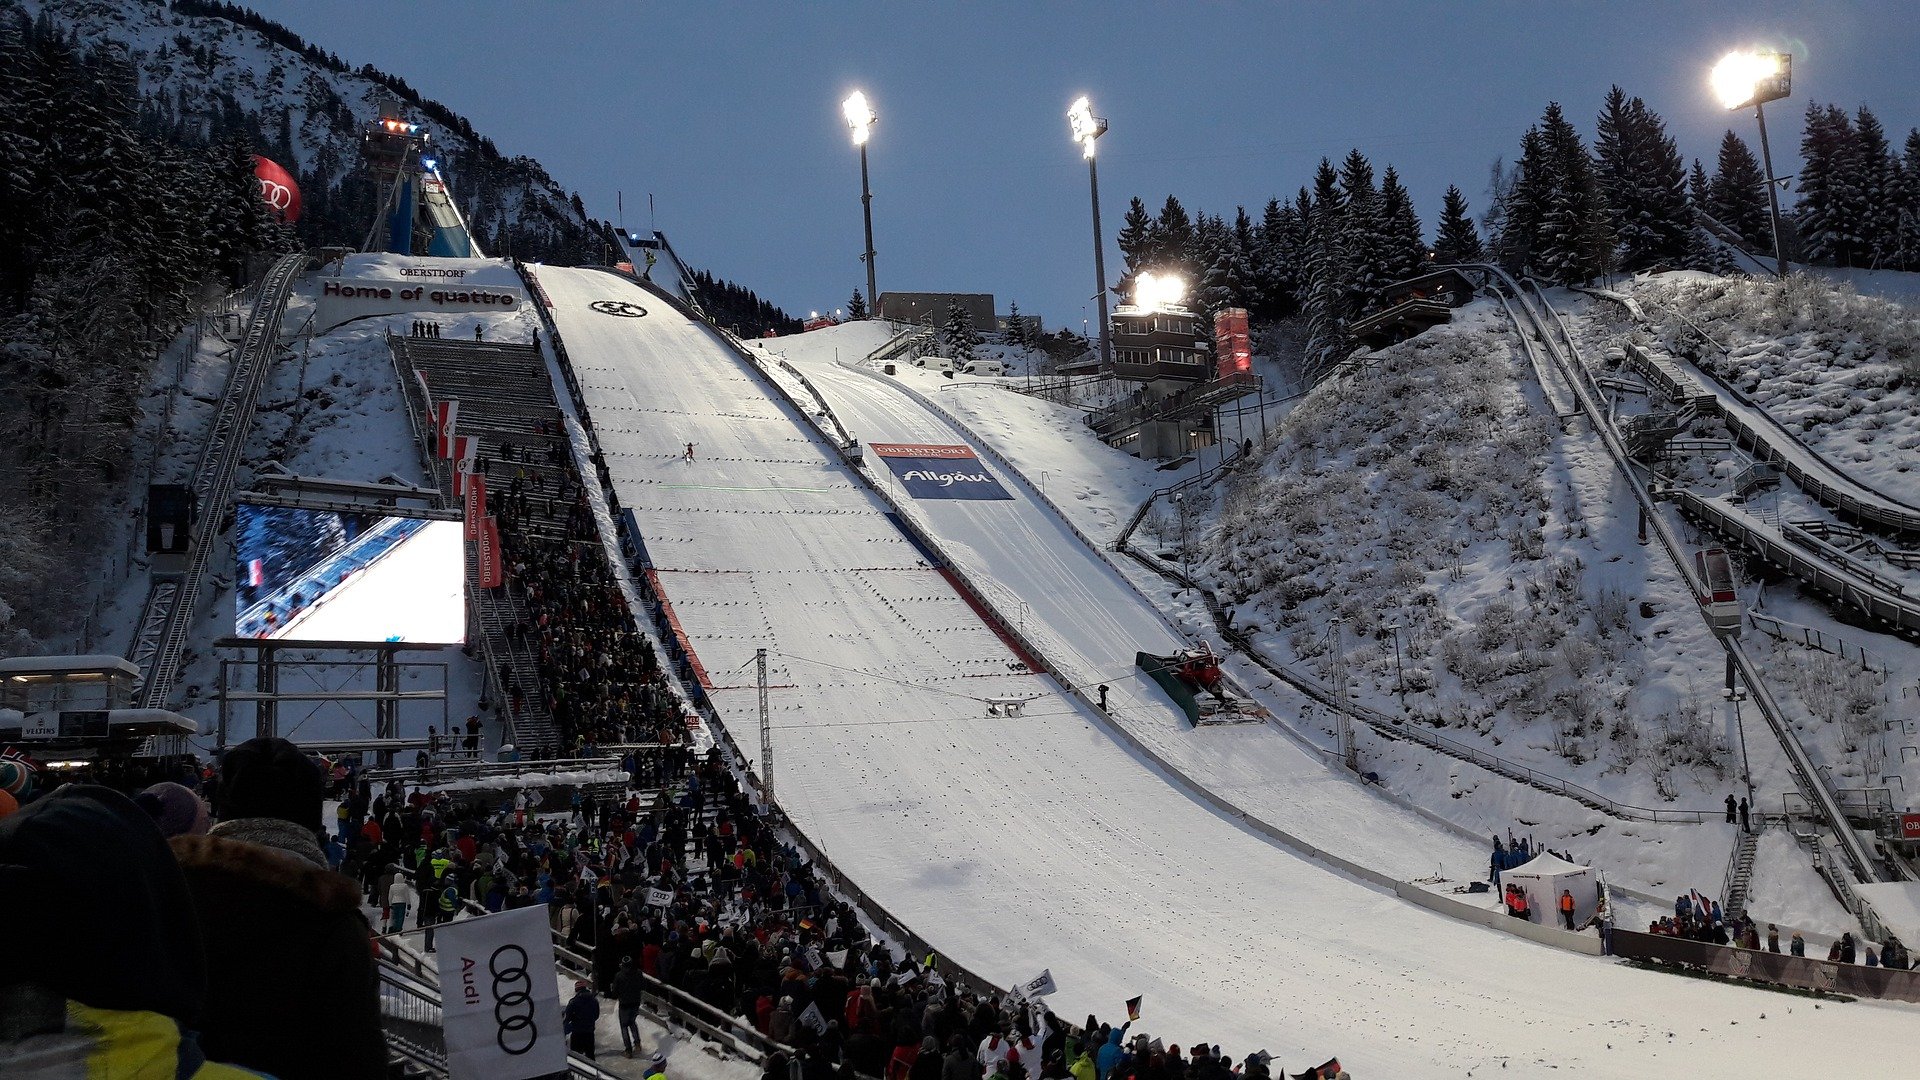 Kolejny konkurs Pucharu Świata w skokach narciarskich przed nami!